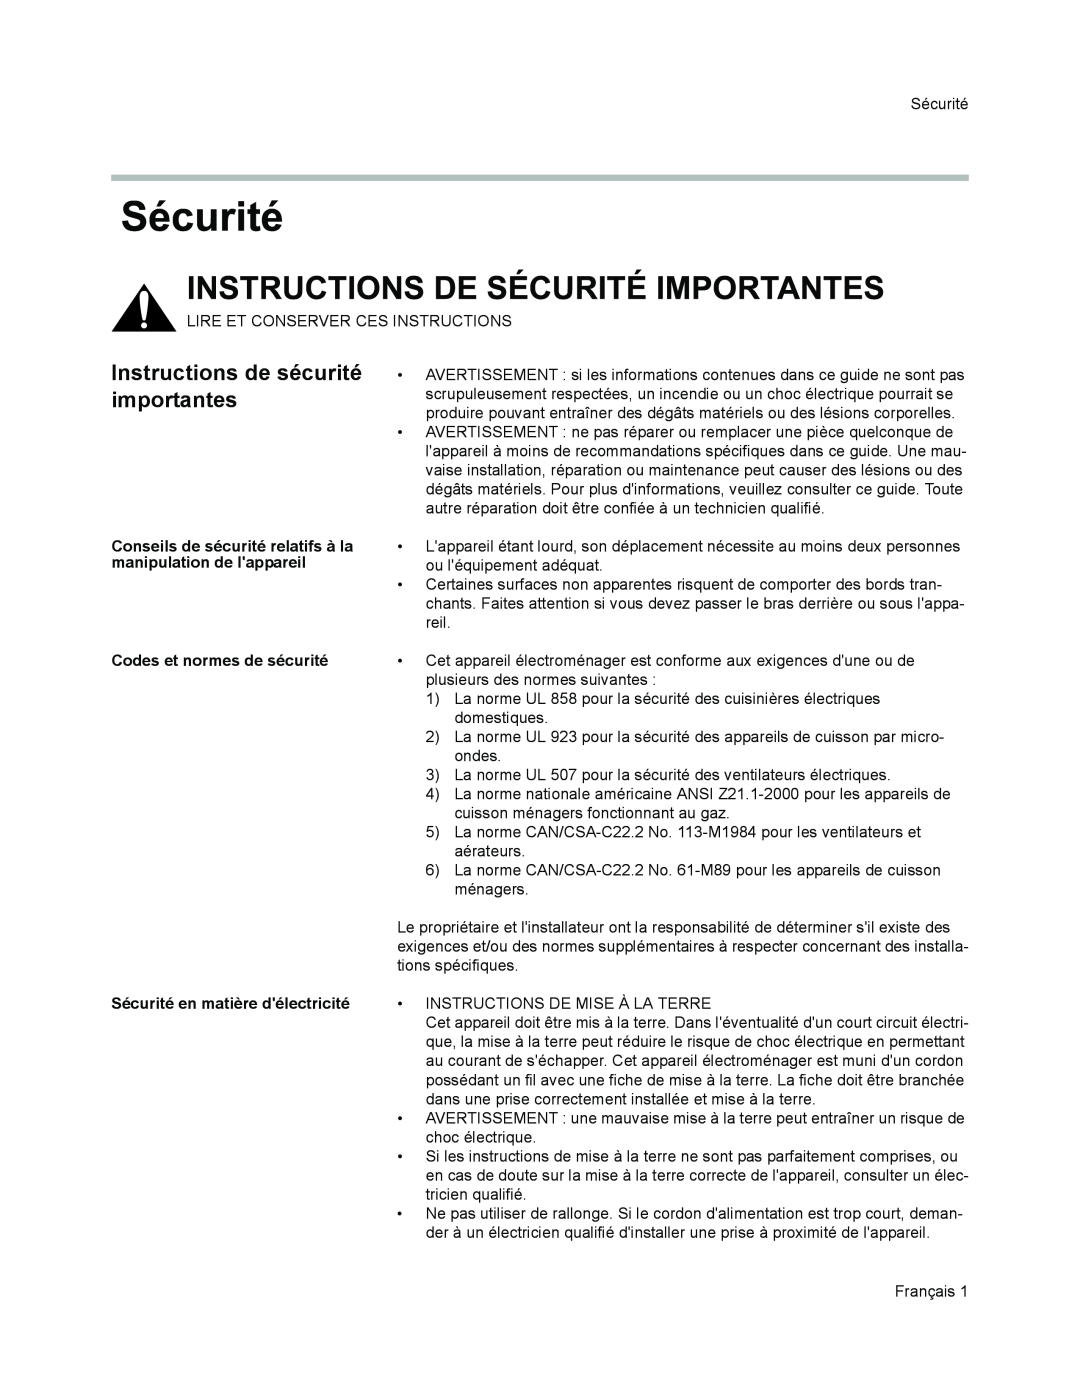 Thermador VCI2 Instructions de sécurité importantes, Codes et normes de sécurité, Sécurité en matière délectricité 